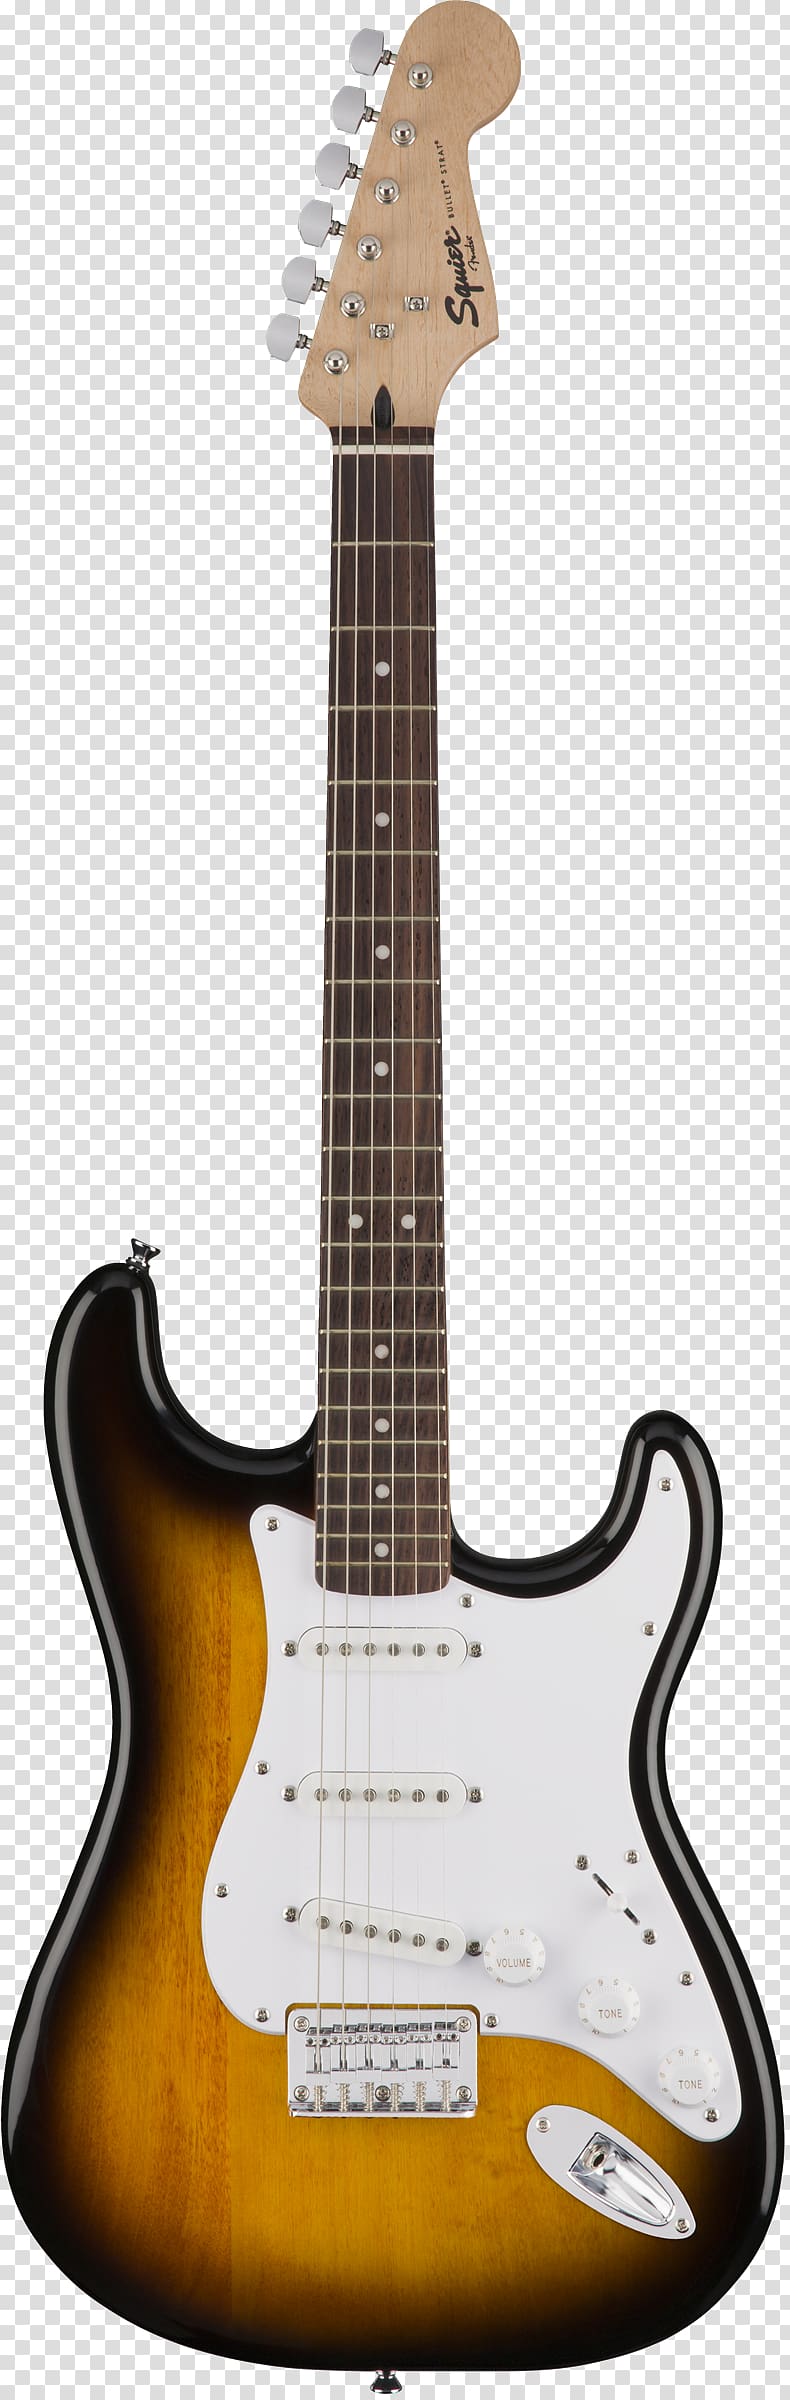 Fender Stratocaster Fender Telecaster Fender Bullet The STRAT Fender Musical Instruments Corporation, sunburst transparent background PNG clipart